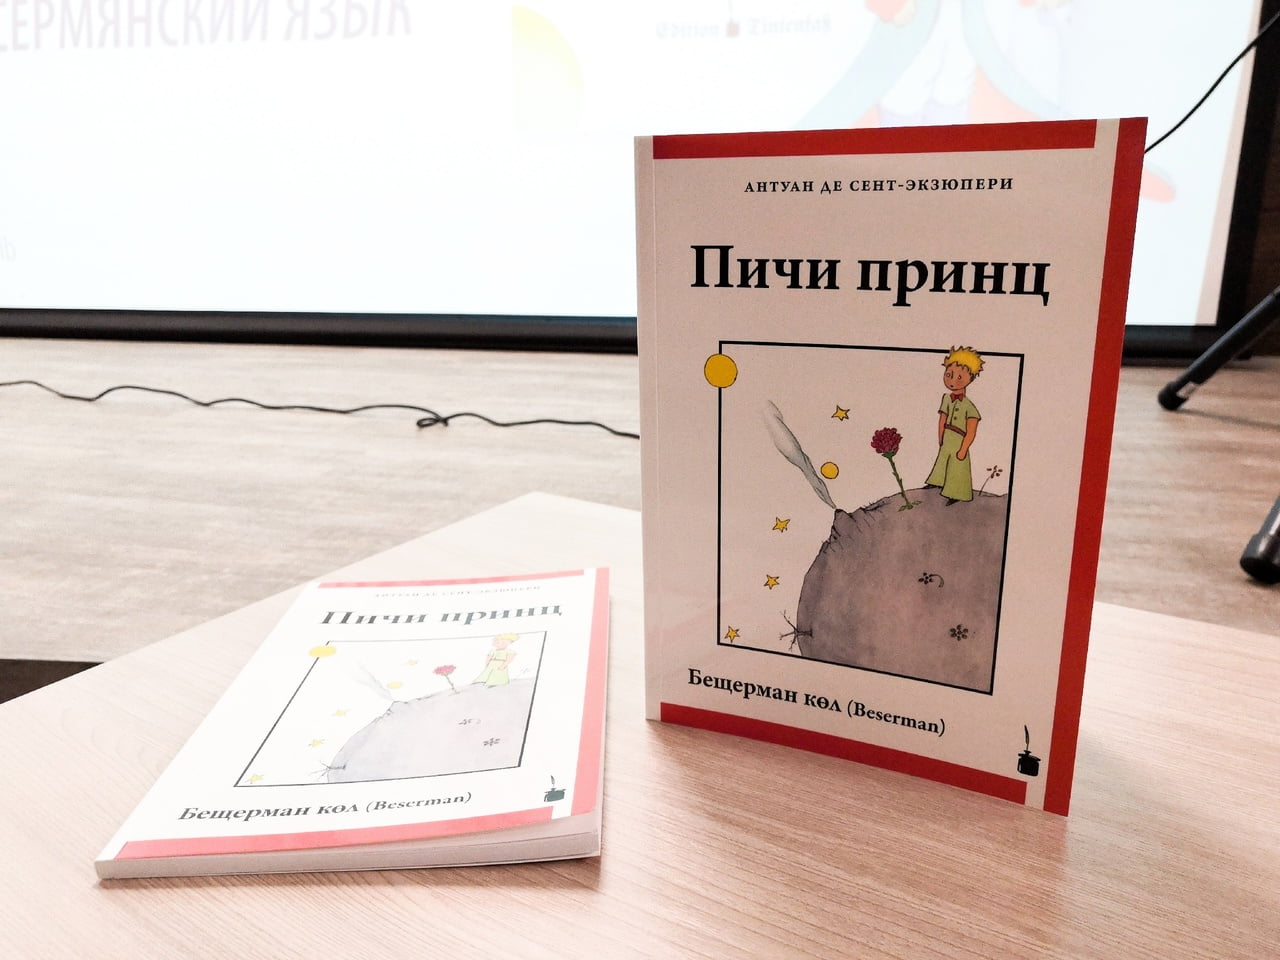 В ижевске состоялась презентация книги «маленький принц» на бесермянском языке 1